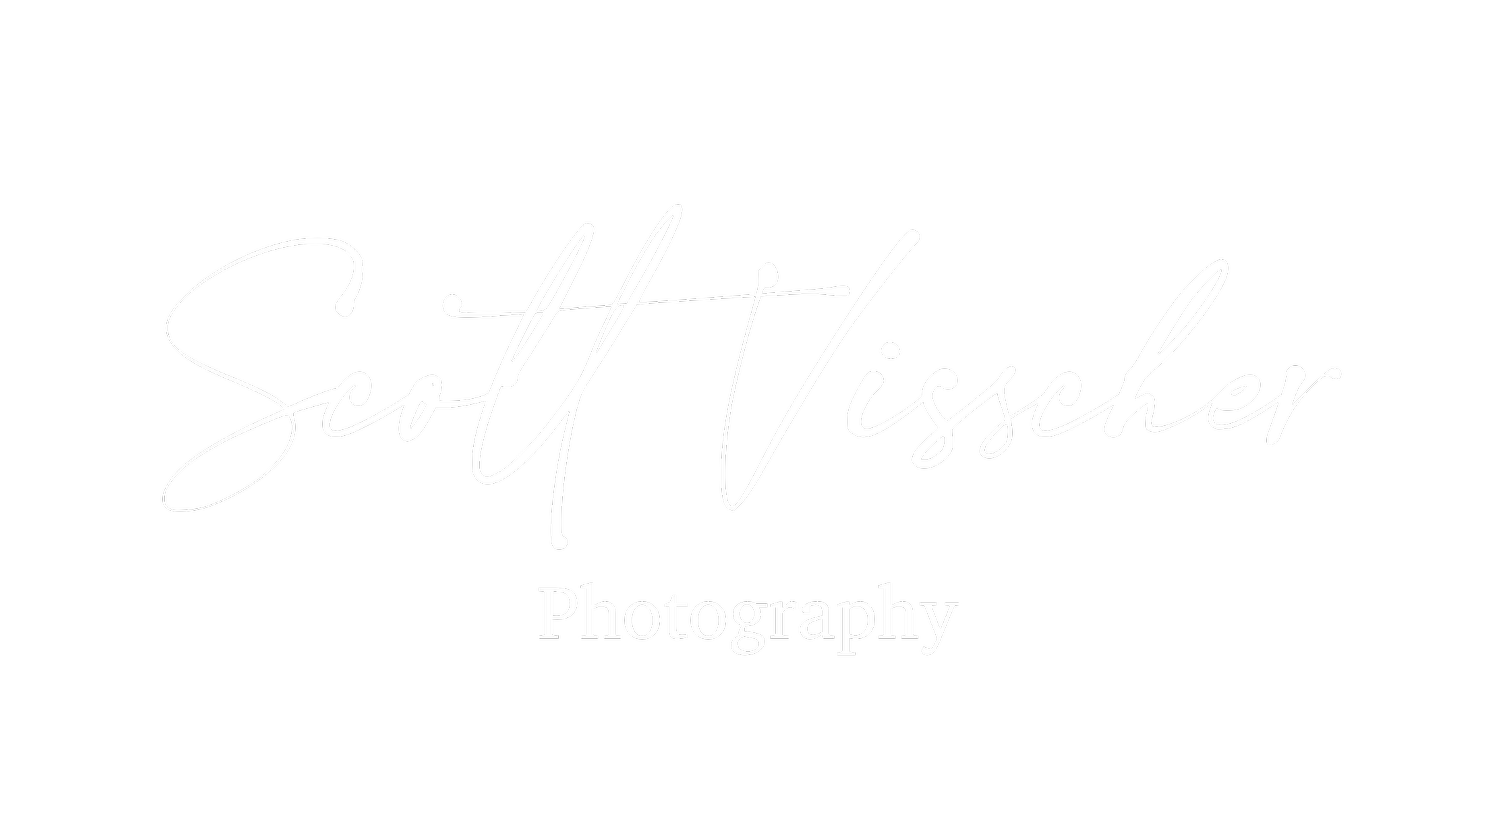 Scott Visscher Photography